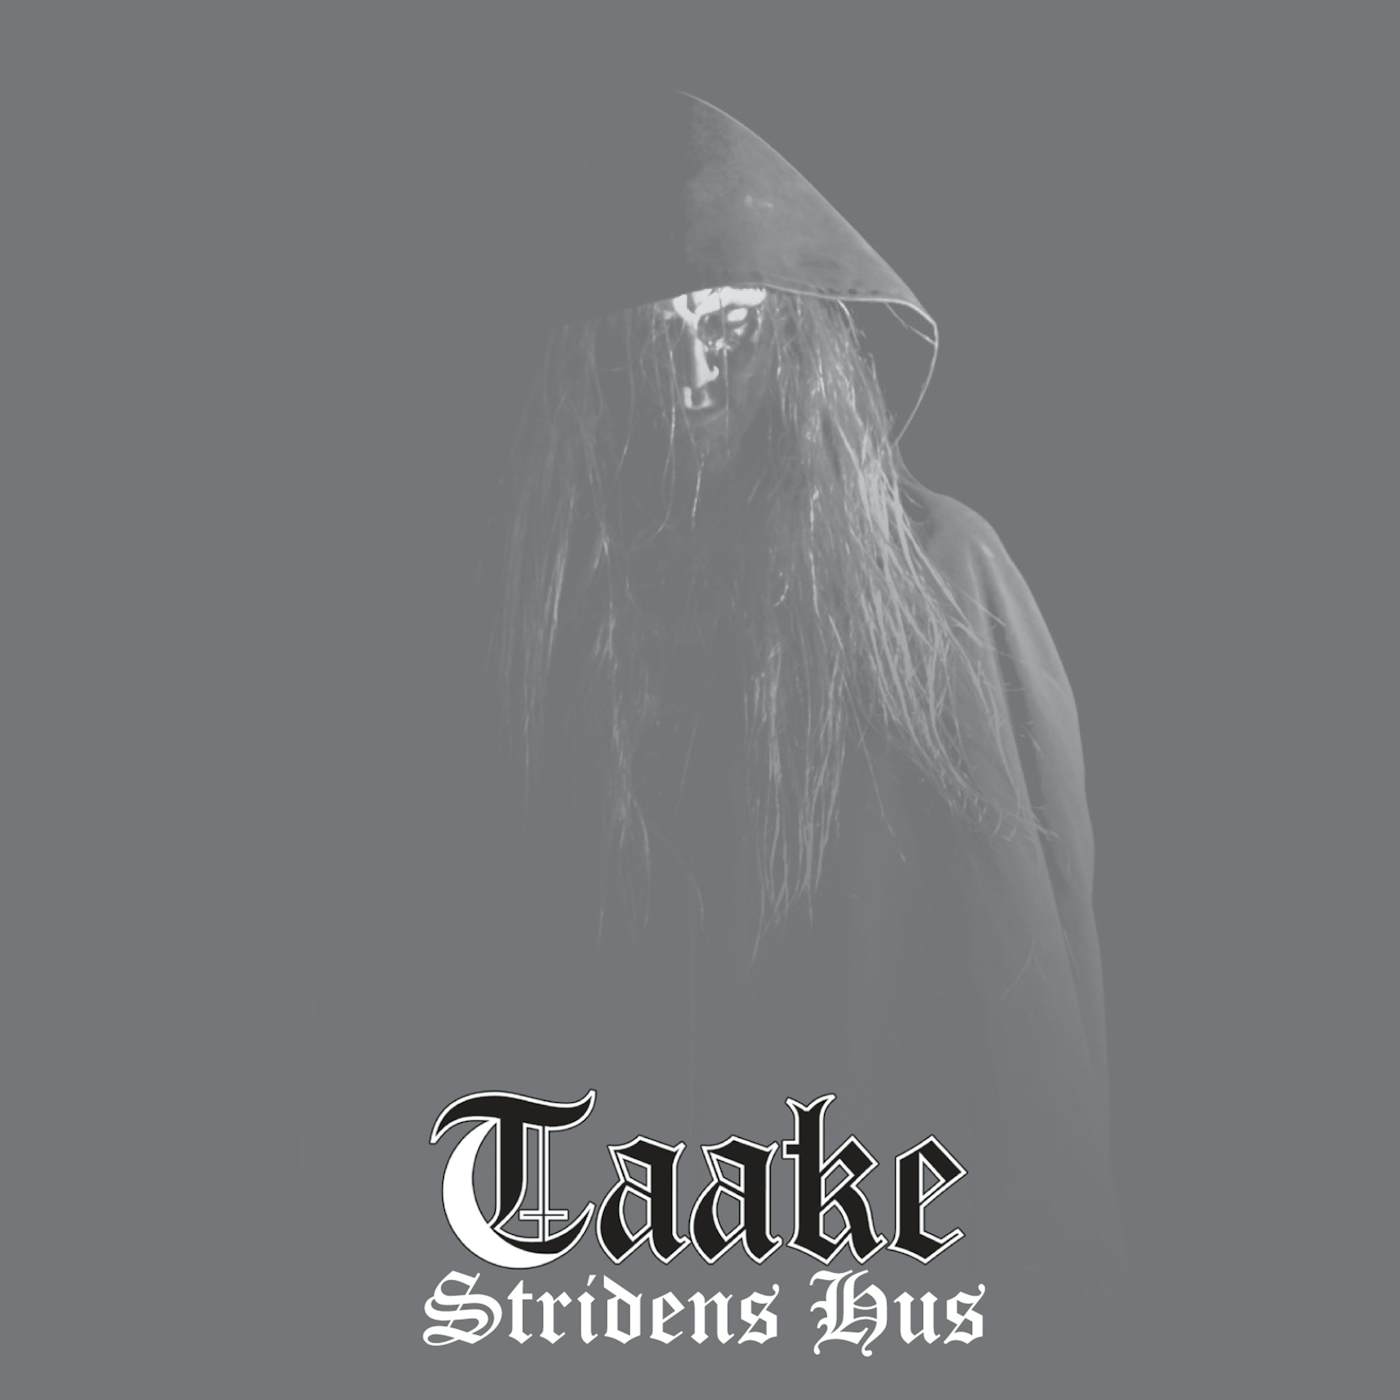 Taake "Stridens Hus" CD